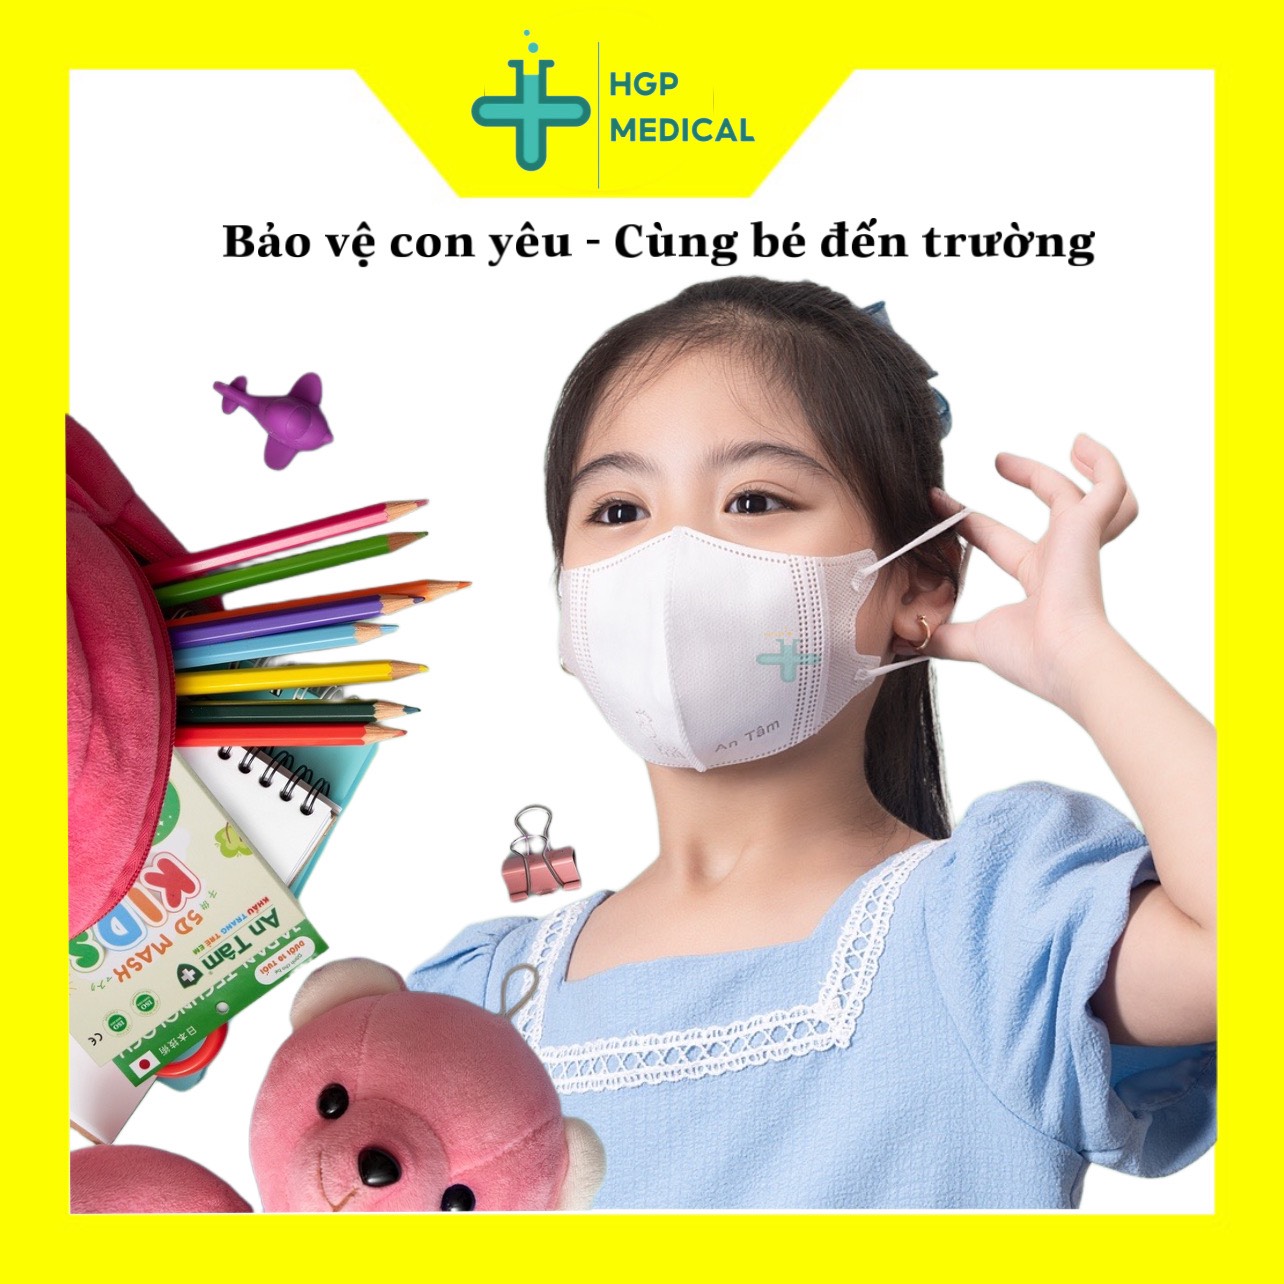 Khẩu trang trẻ em 5D An Tâm, trẻ em 0-10 tuổi, kháng khuẩn, kháng virus, ôm vừa mặt,chứng nhận tiêu chuẩn sản phẩm